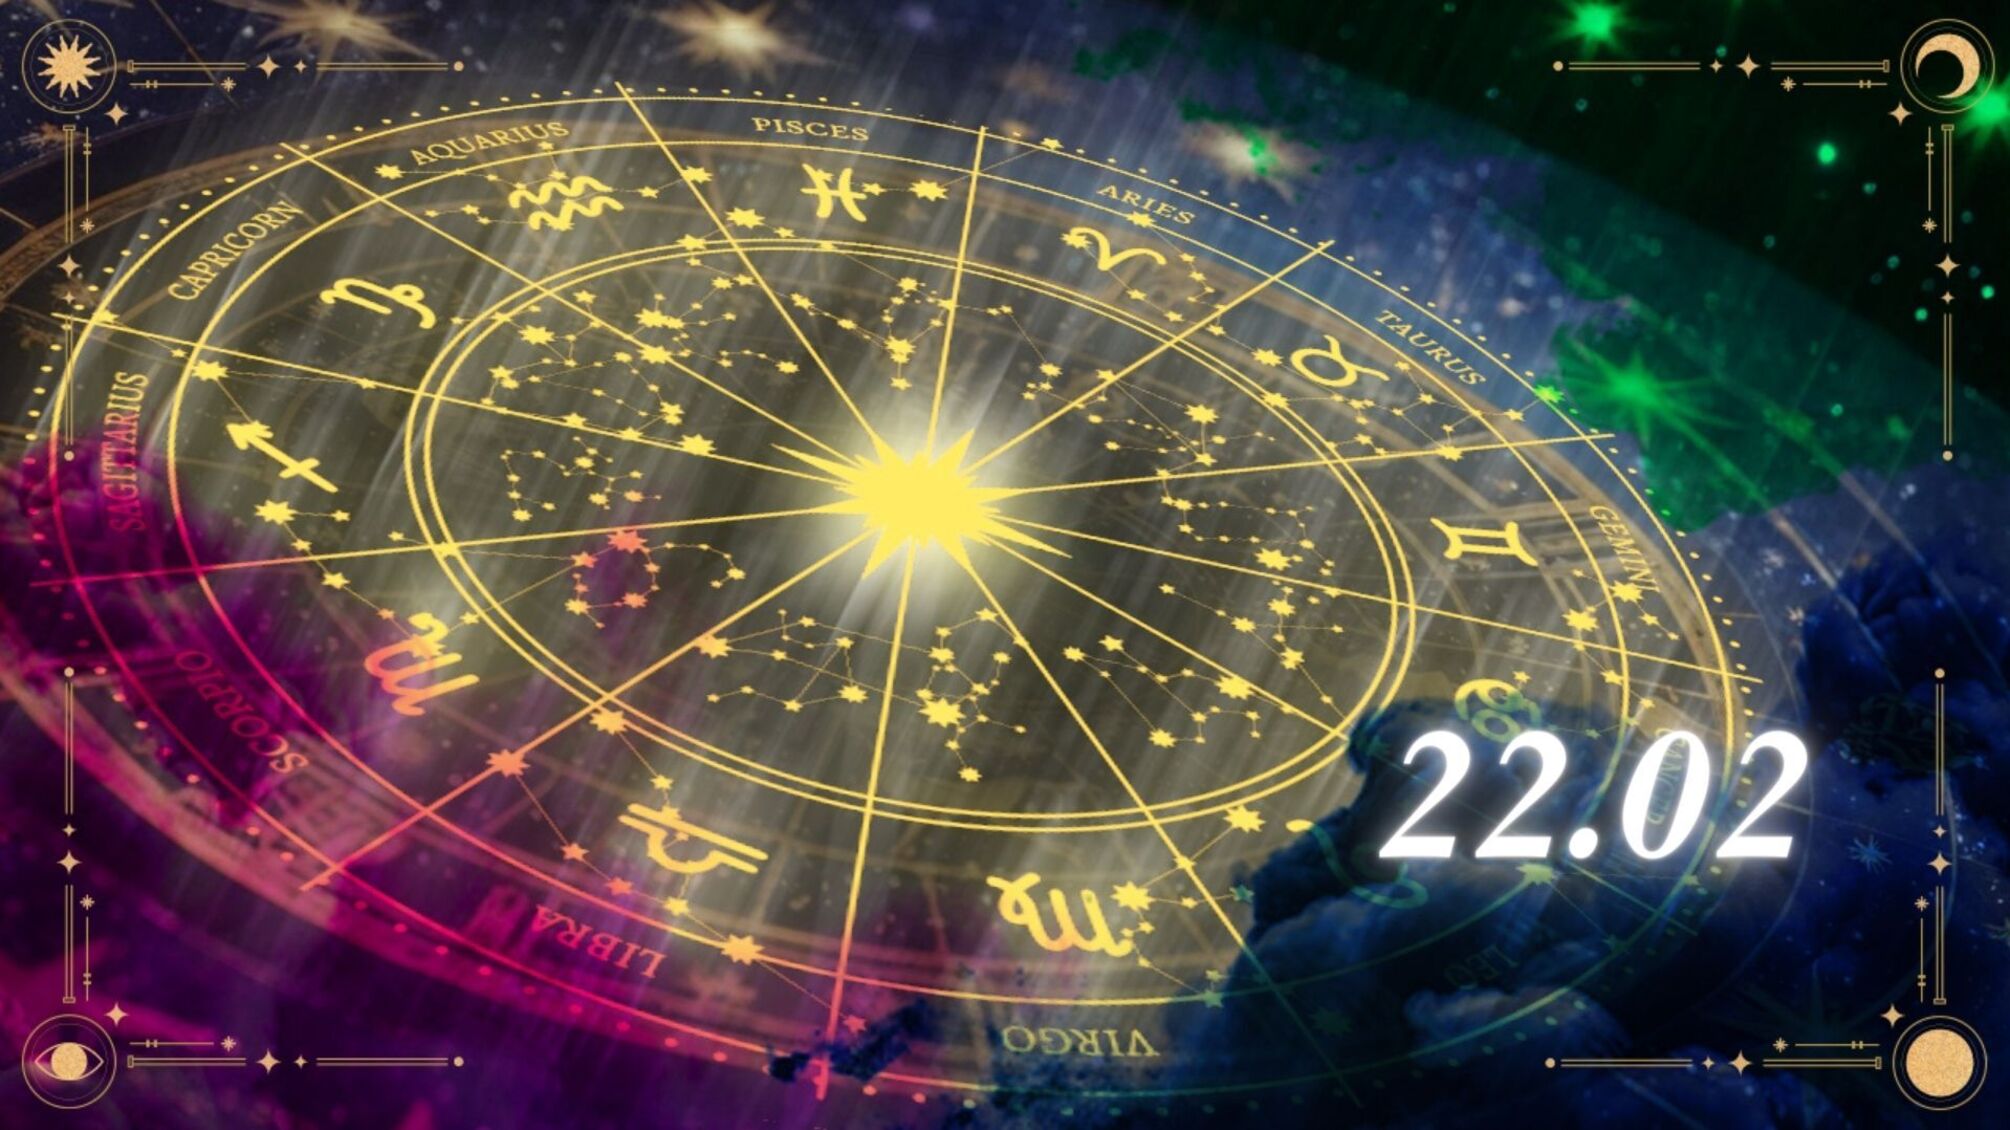 Водолеям пригодится опыт, а Девам лучше смоделировать свой путь к цели: гороскоп на 22 февраля